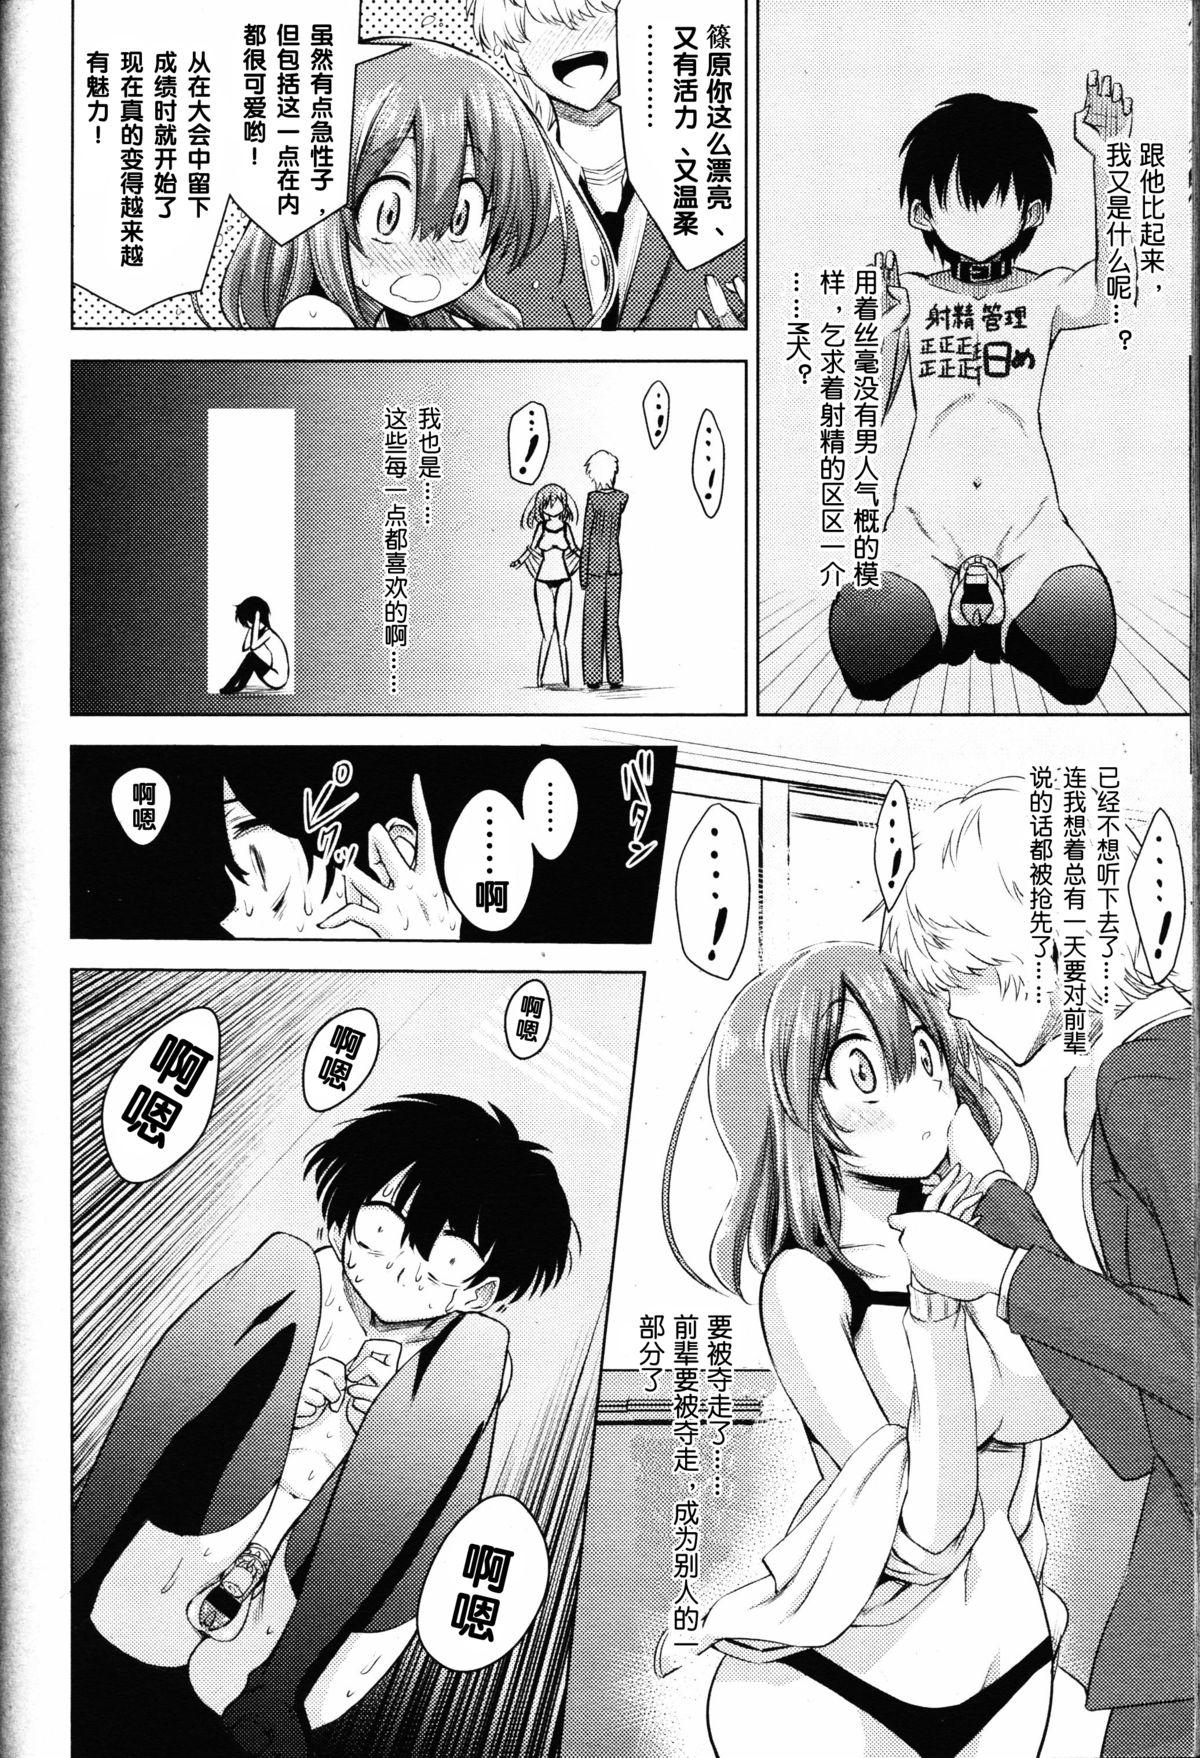 Innocent Boku wa Tada Tada Tada Ushinau 18 Year Old - Page 11